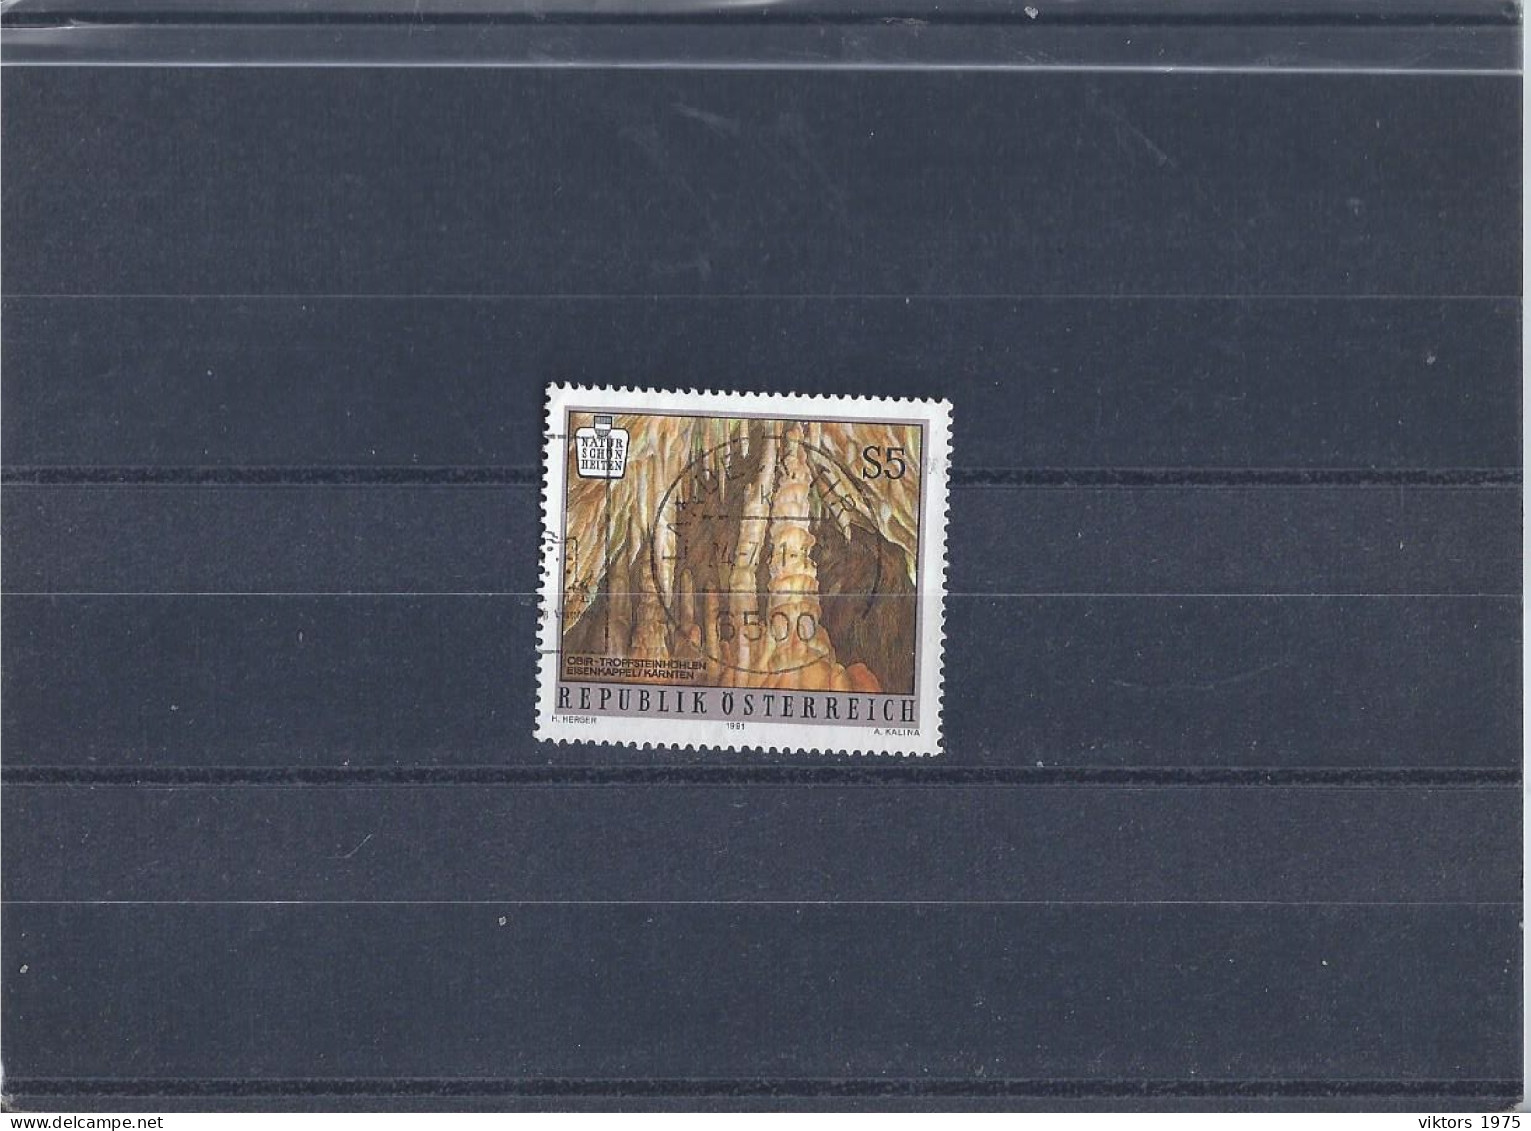 Used Stamp Nr.2023 In MICHEL Catalog - Usati